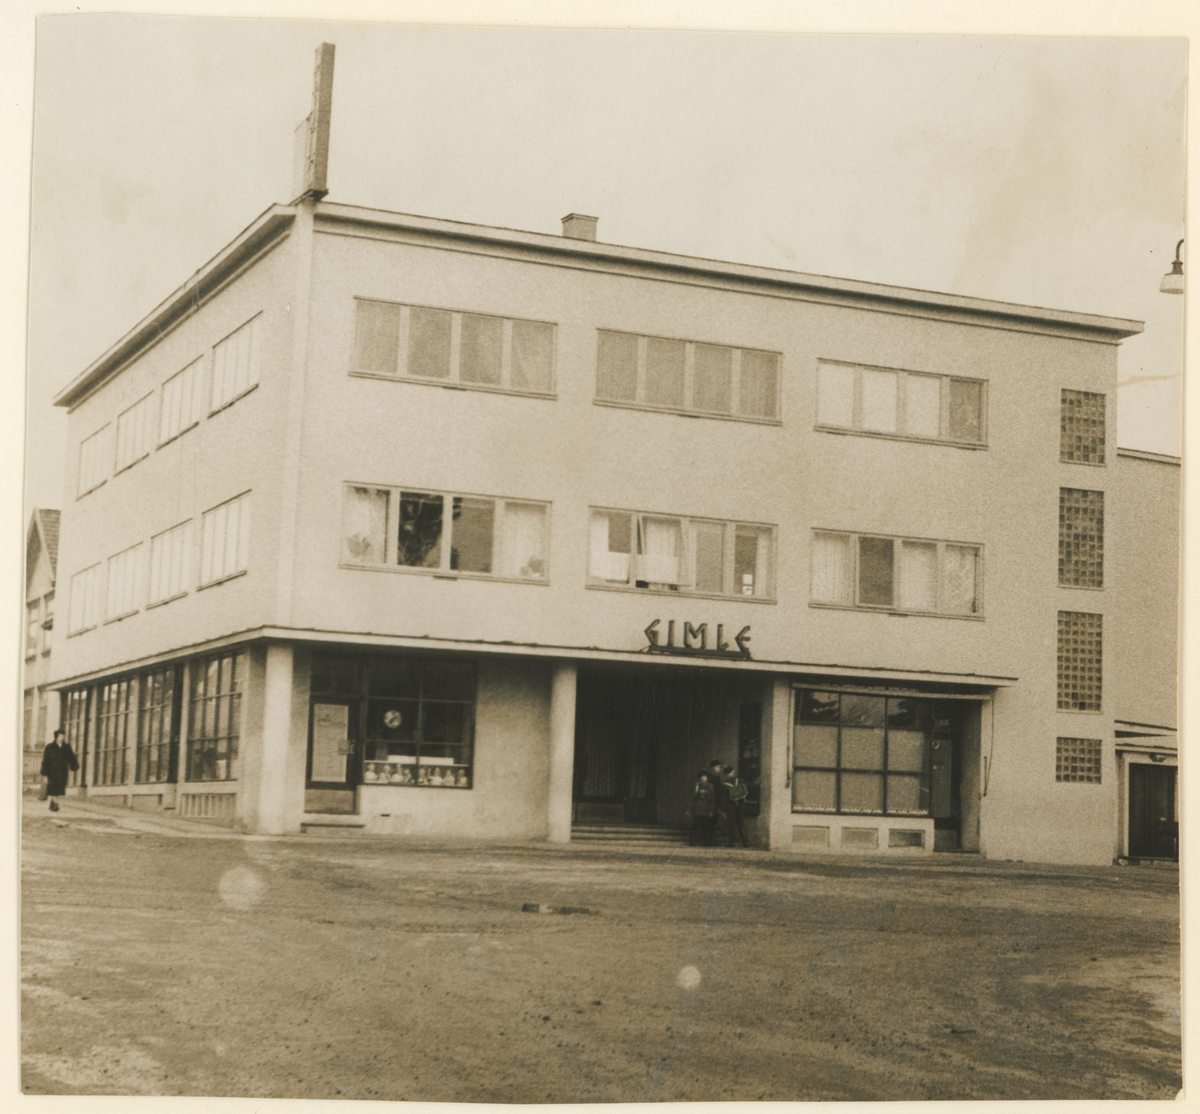 To bilder fra Gimle.

Bilde 1:
Hovedbygningen, årstall 1936.
Historikk: Ble flyttet til Kubberød; mens det stod på Gimle brukt som pensjonat i en tid.

Bilde 2:
Gimle kino, reist i 1938.